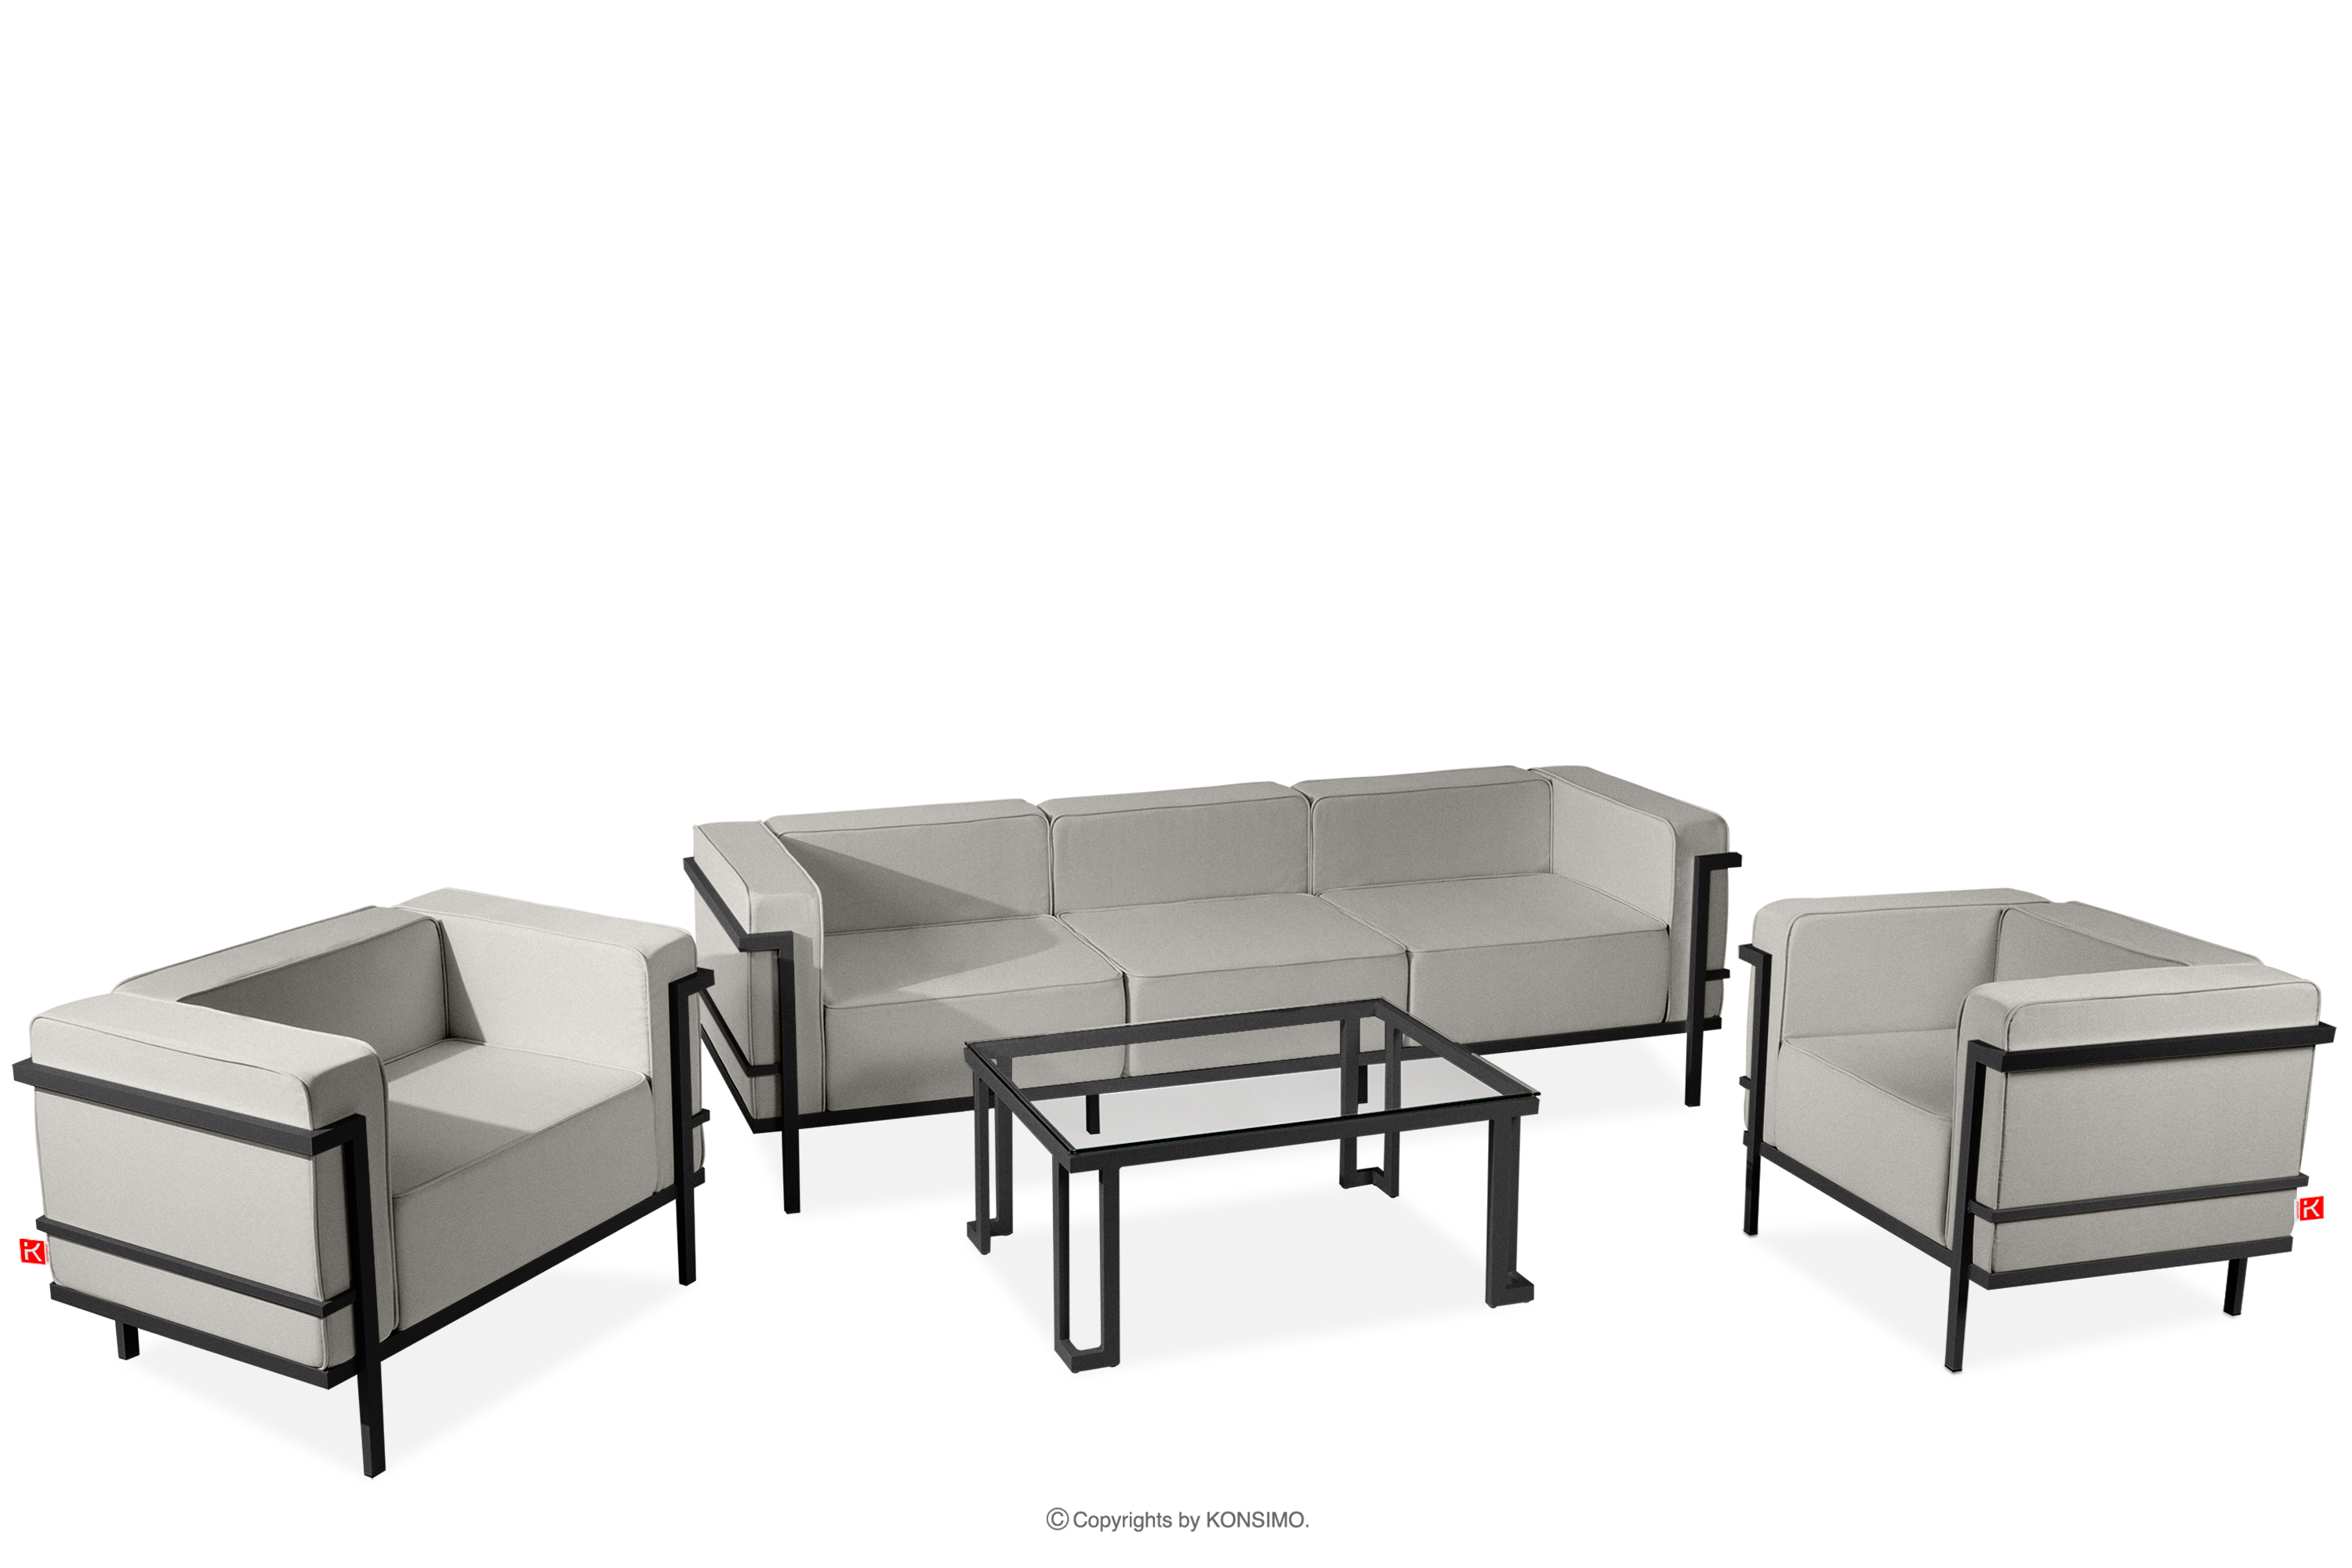 Moderní sada zahradního nábytku tmavě šedá/světle šedá (1,1,3,1)